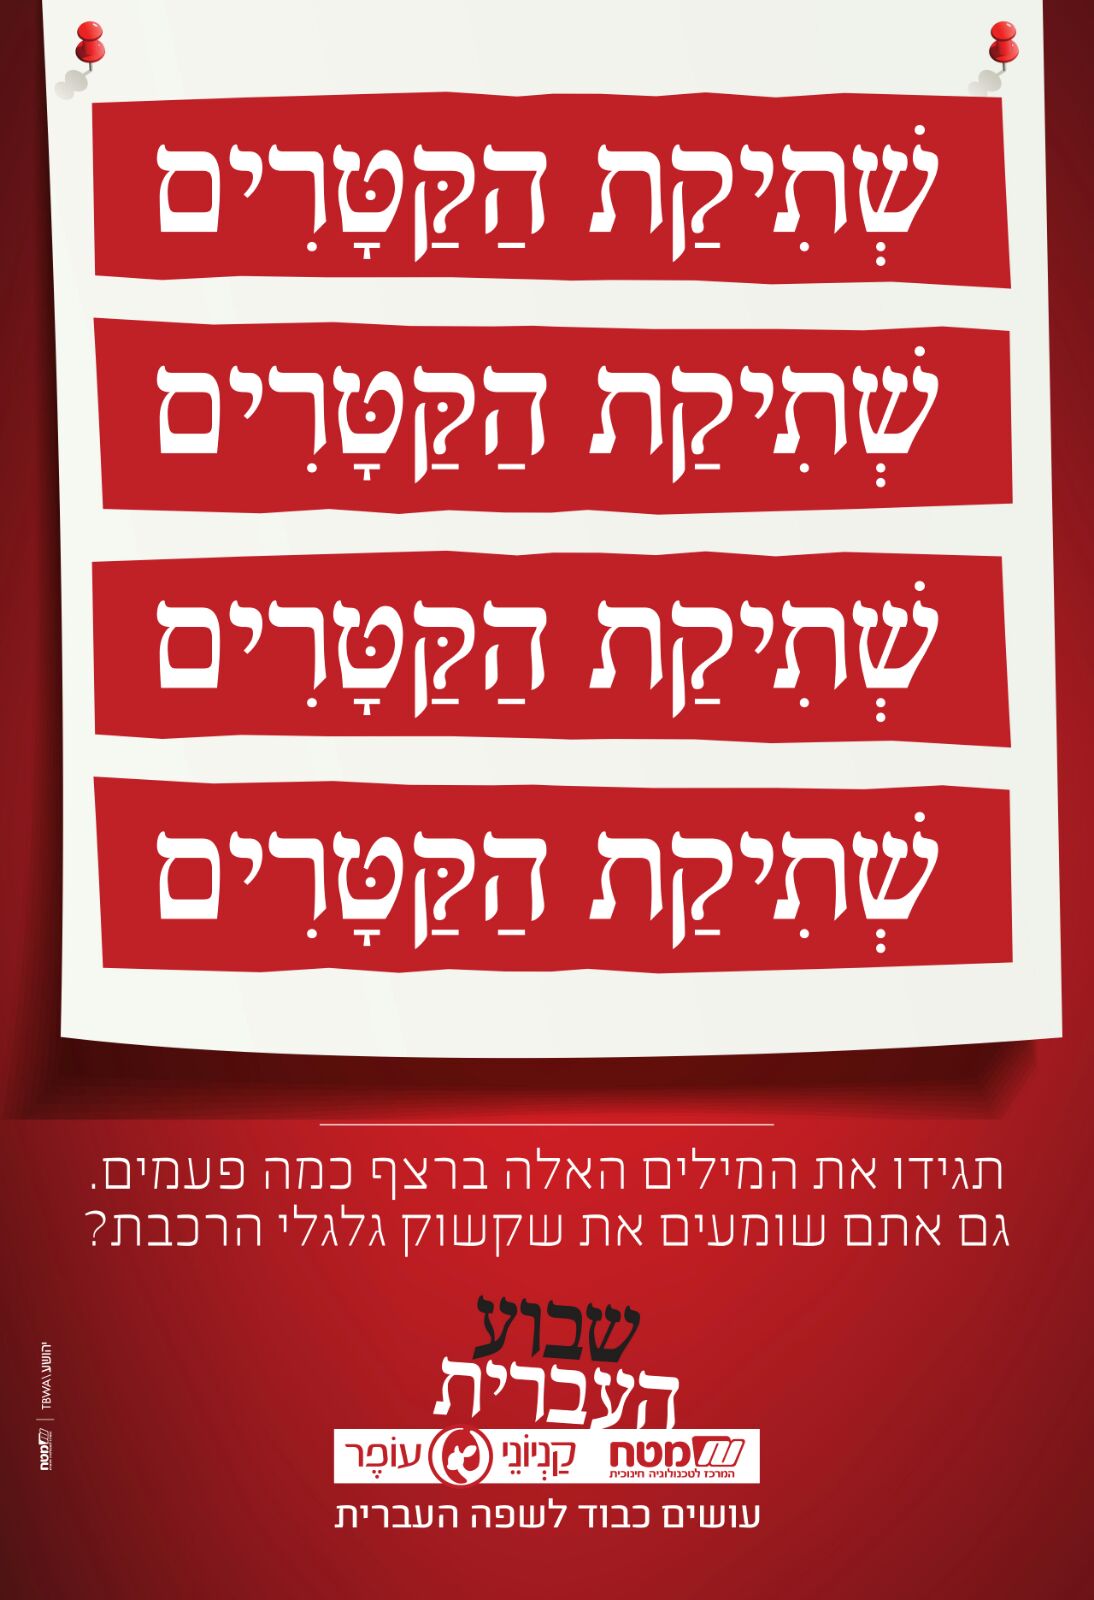 מסע פרסומי המציג את הצדדים המשעשעים של השפה העברית 5